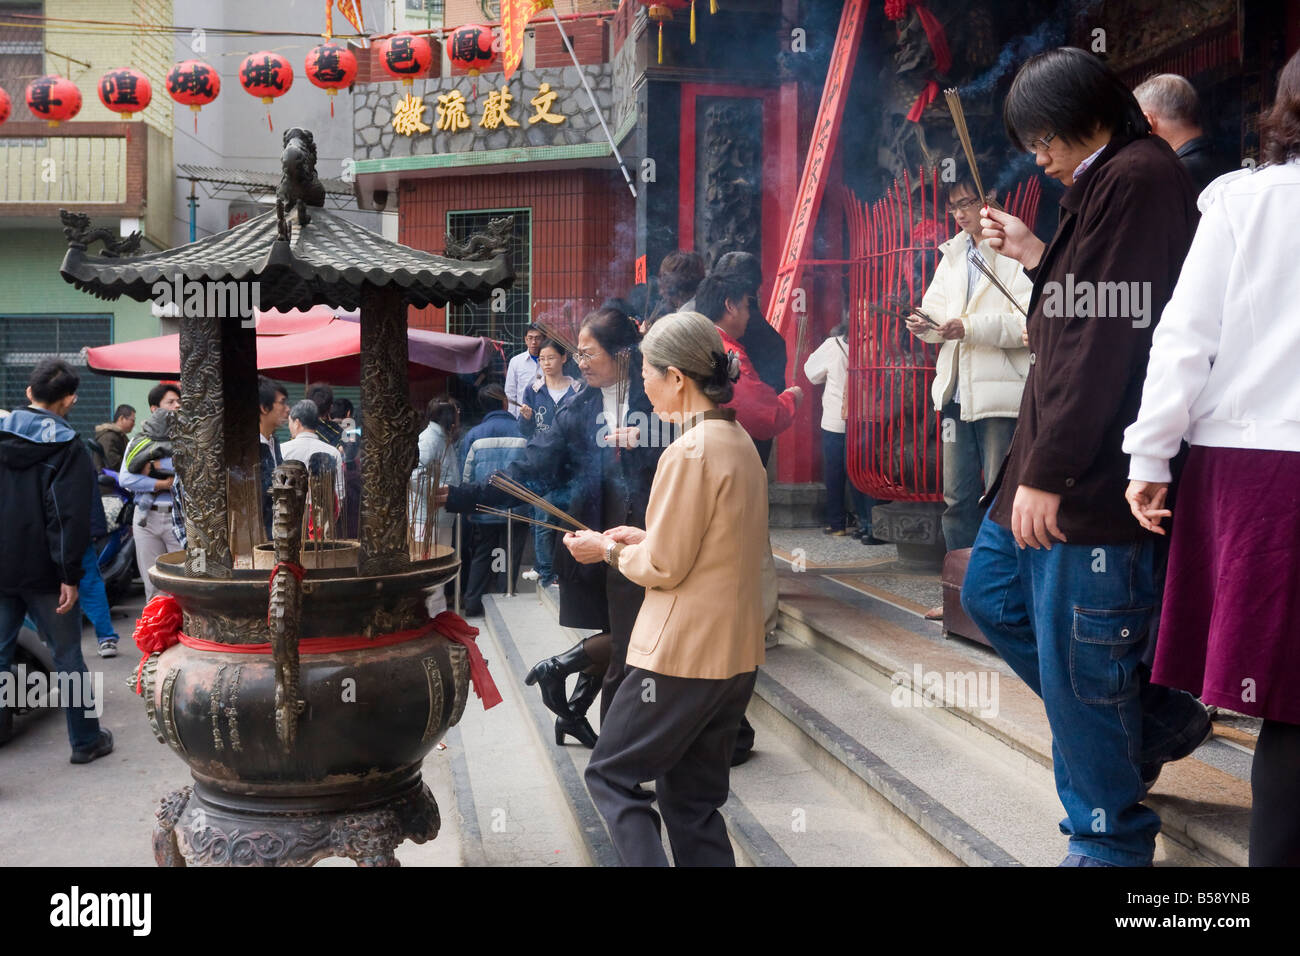 Gläubige beten während Chinese New Year eine taiwanesische chinesisch-buddhistischen Tempel, Kaohsiung, Taiwan, Republik China (ROC) Stockfoto